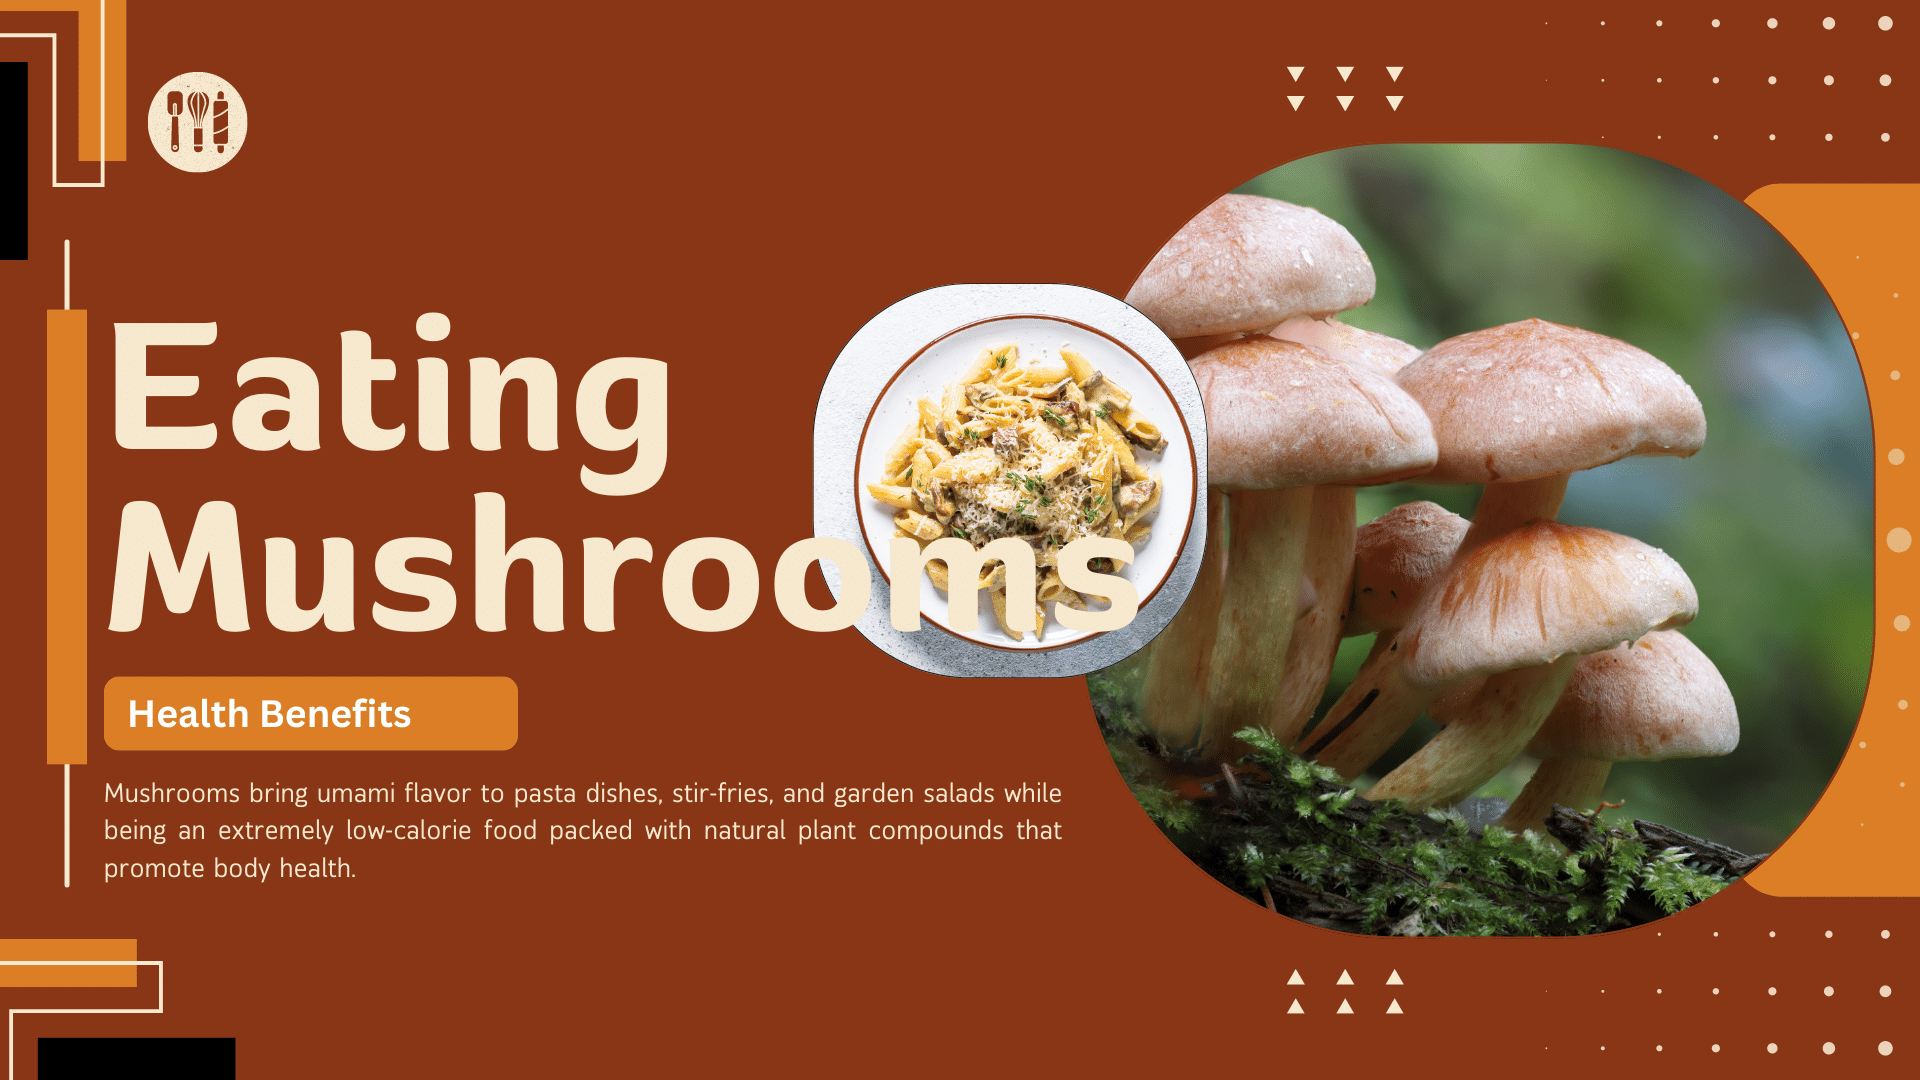 Польза для здоровья от употребления грибов – все, что вам следует знать